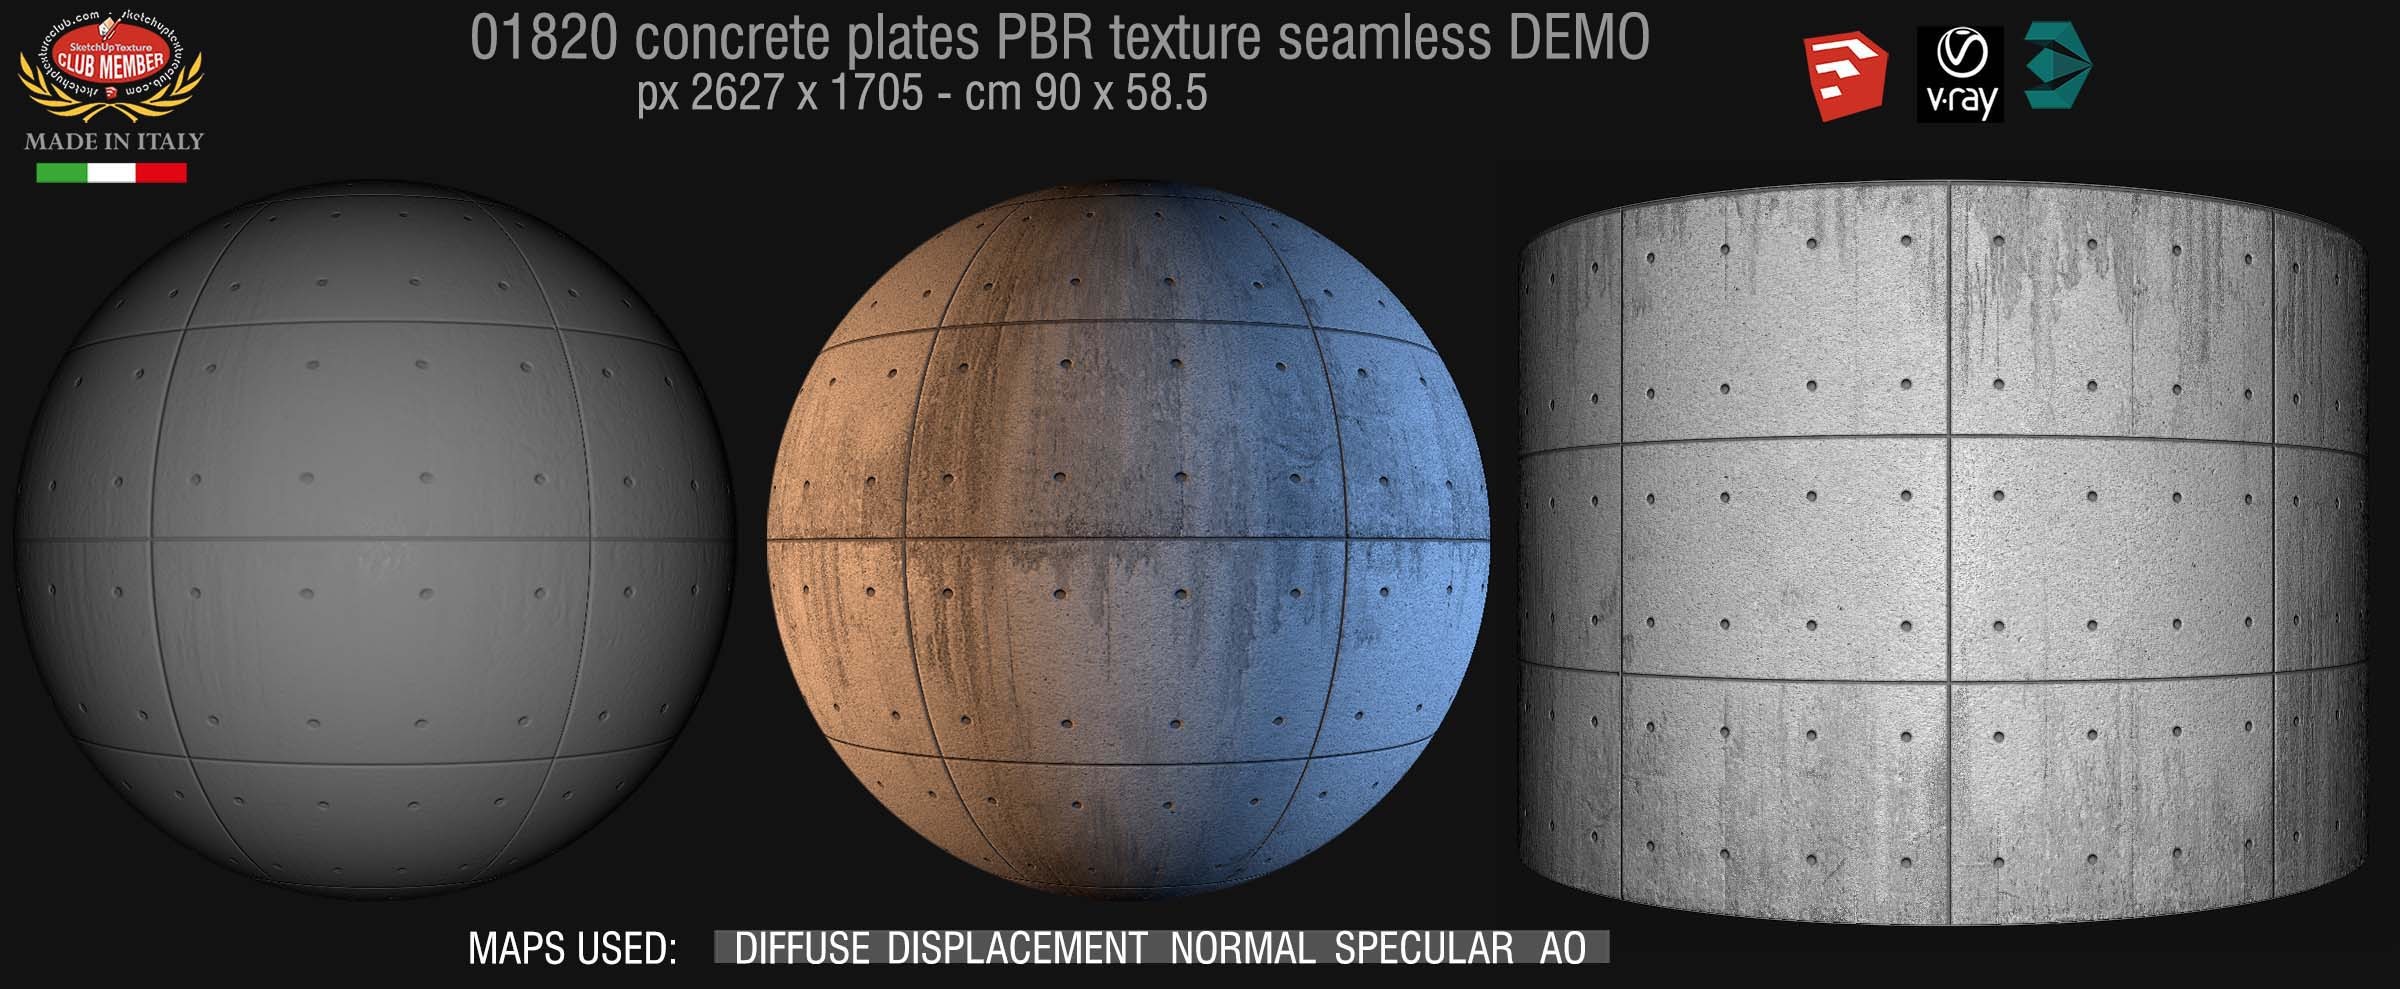 01820 Tadao Ando concrete plates PBR texture seamless DEMO